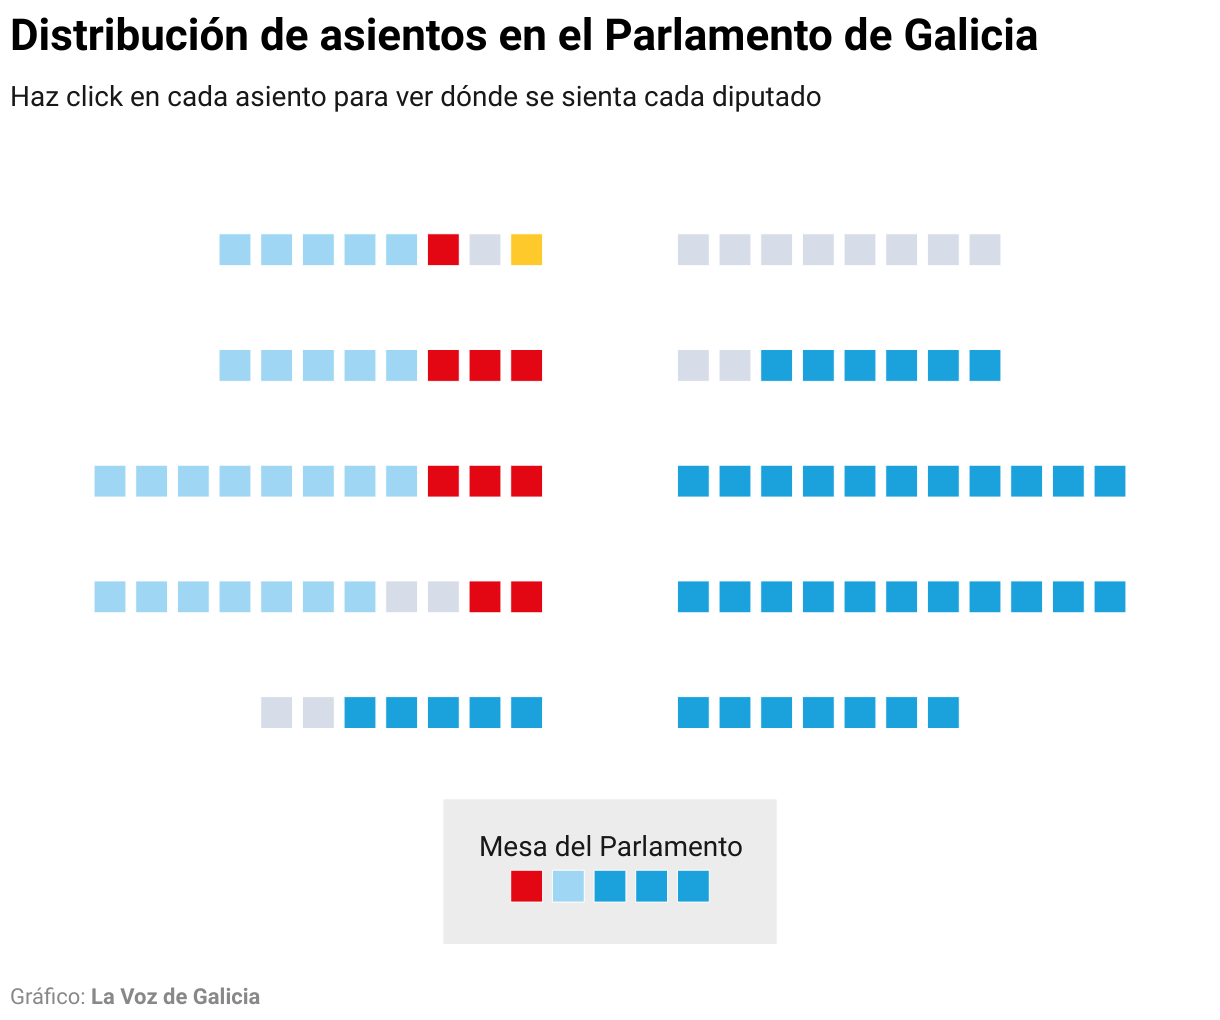 Grfico con la distribucin de los asientos en el Parlamento de Galicia para la duodcima legislatura.